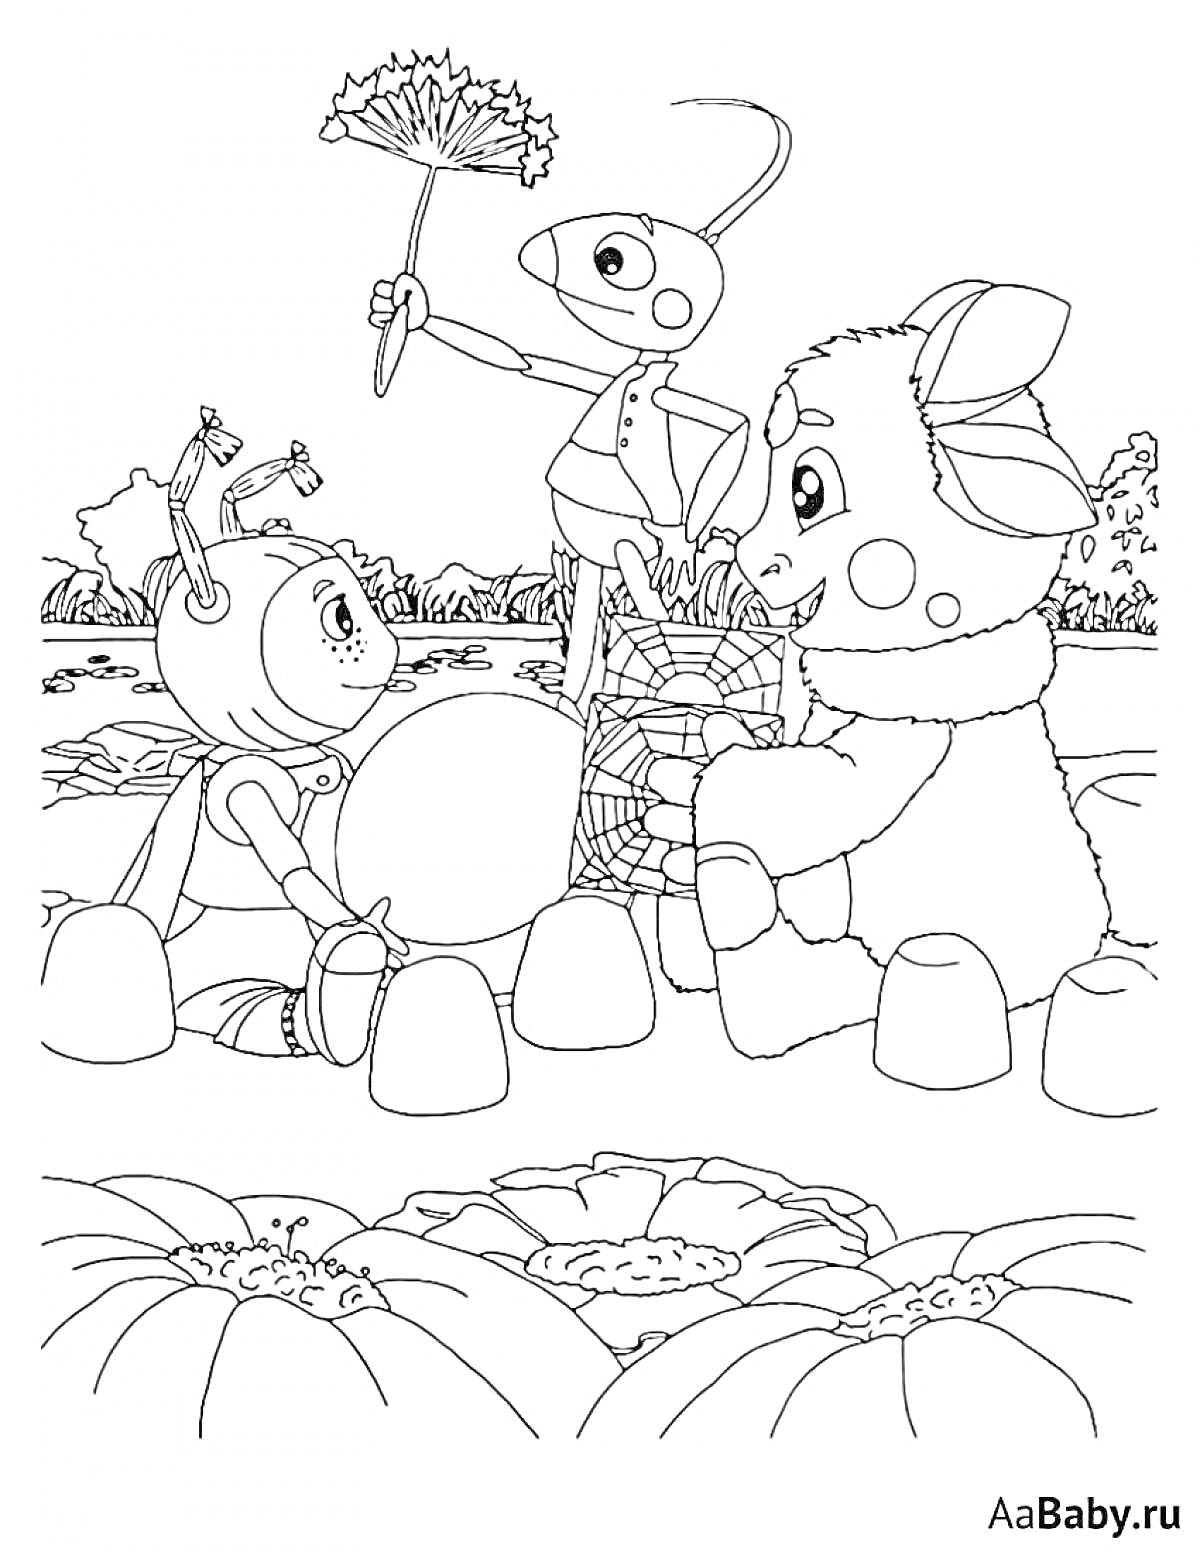 Раскраска Лунтик и его друзья сидят вокруг костра, Лунтик с книгой, персонаж с двумя антеннами держит большой камень, персонаж с антеннами в руках держит цветок